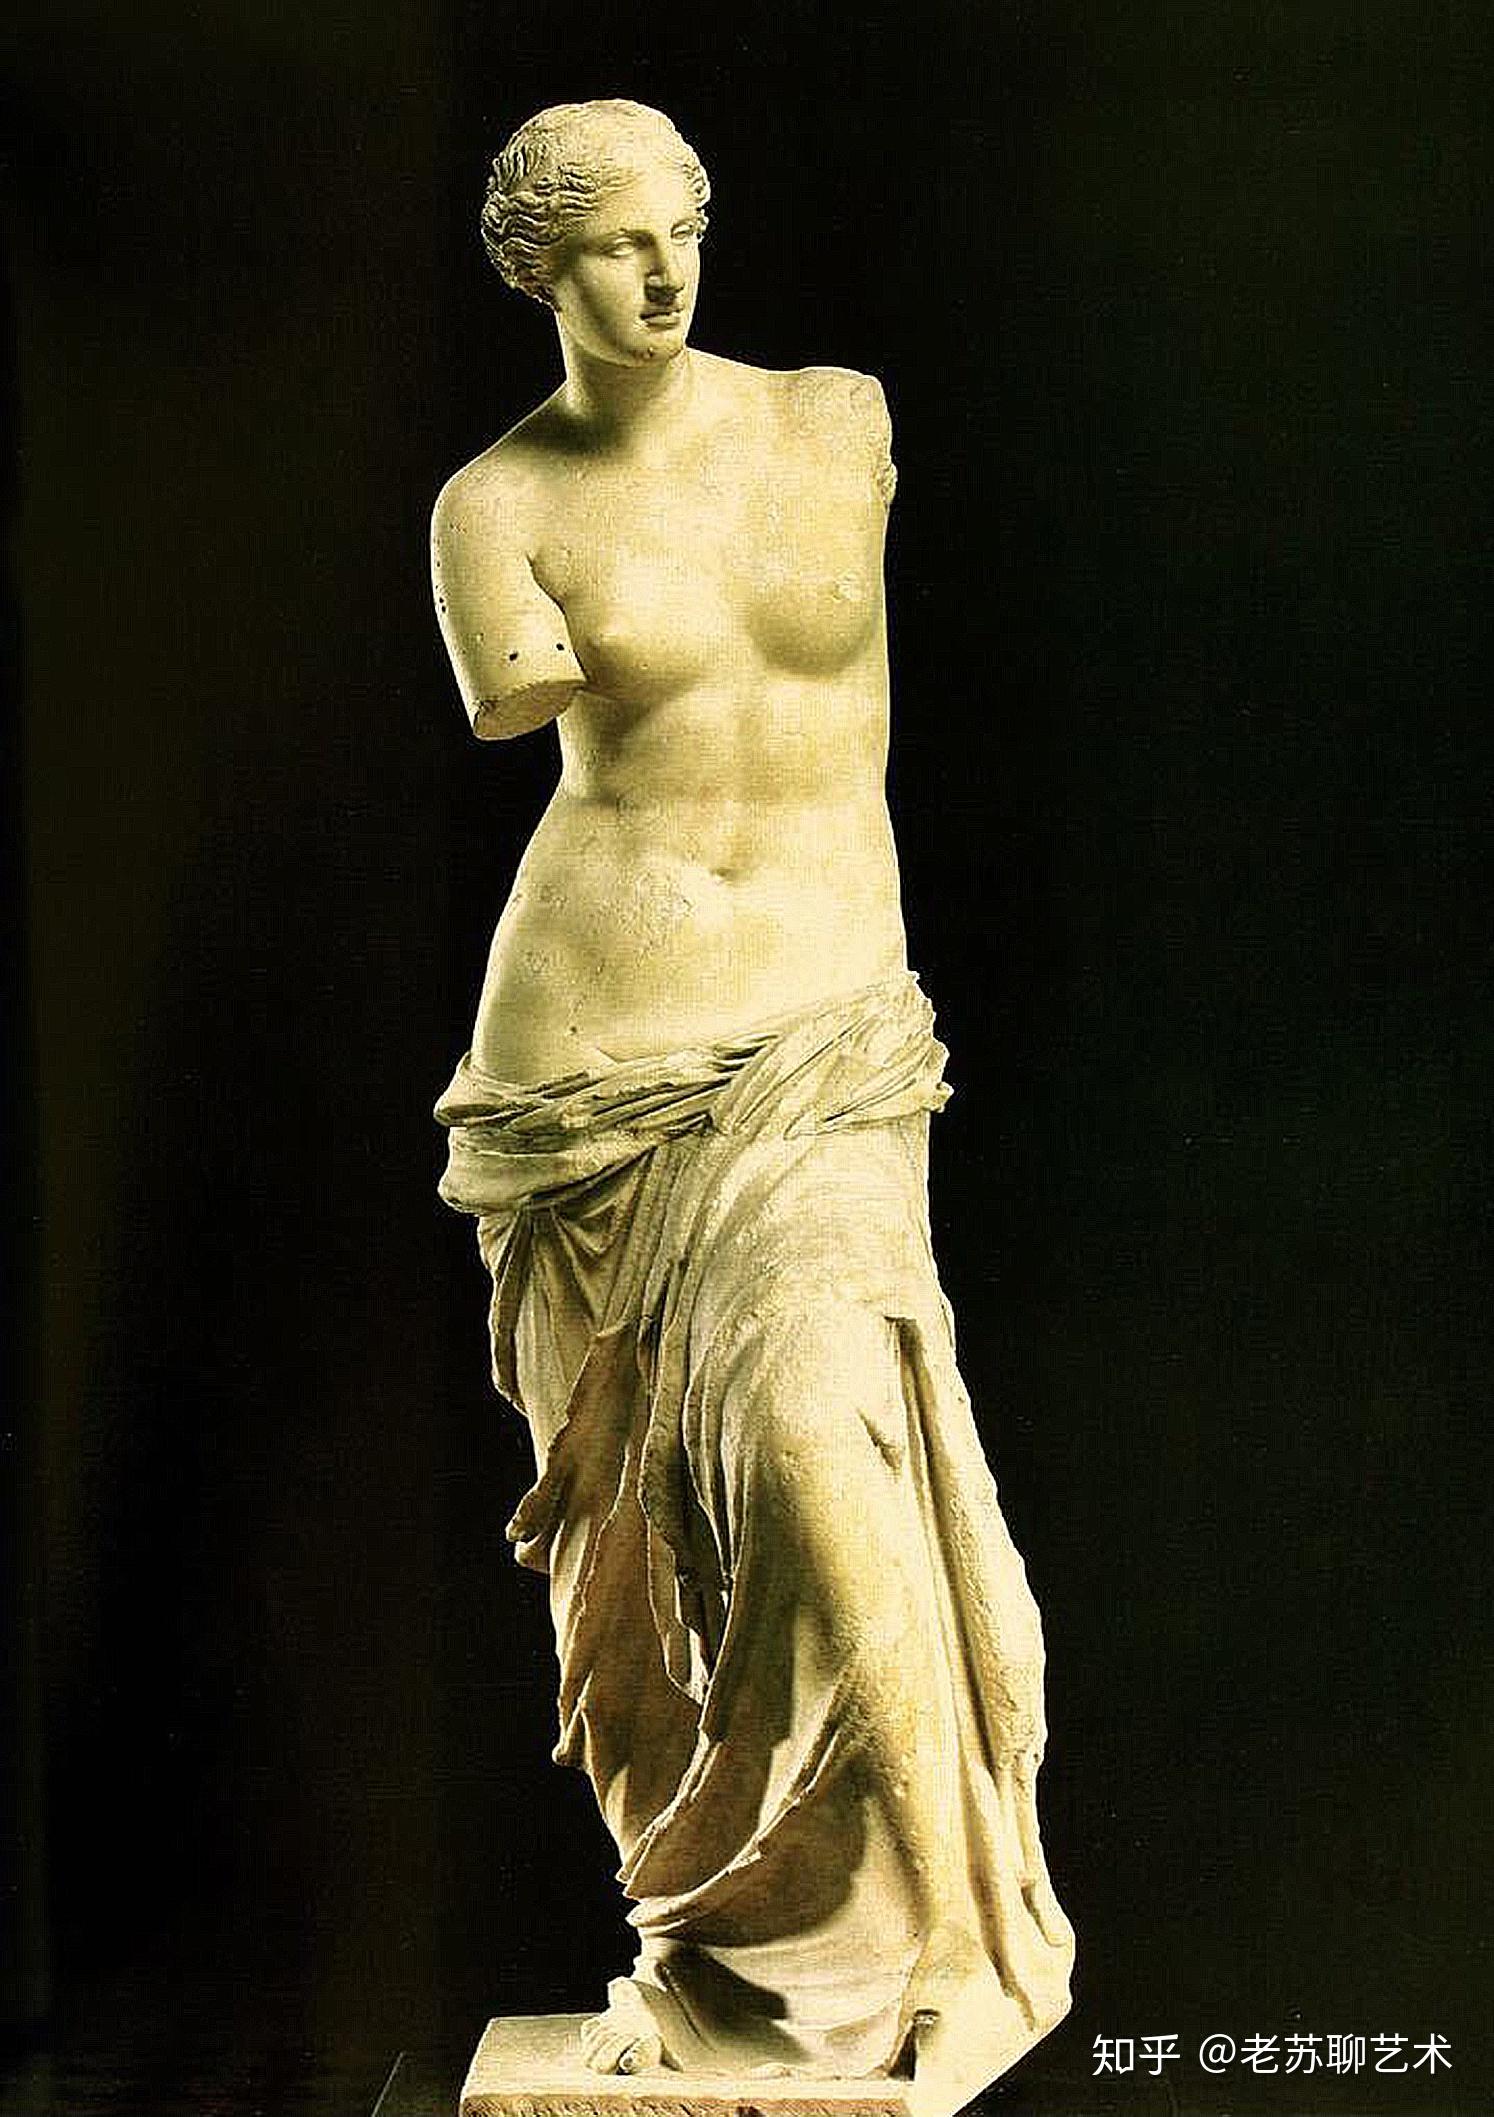 断臂维纳斯世界上最著名的雕像之一也是卢浮宫的镇馆之宝